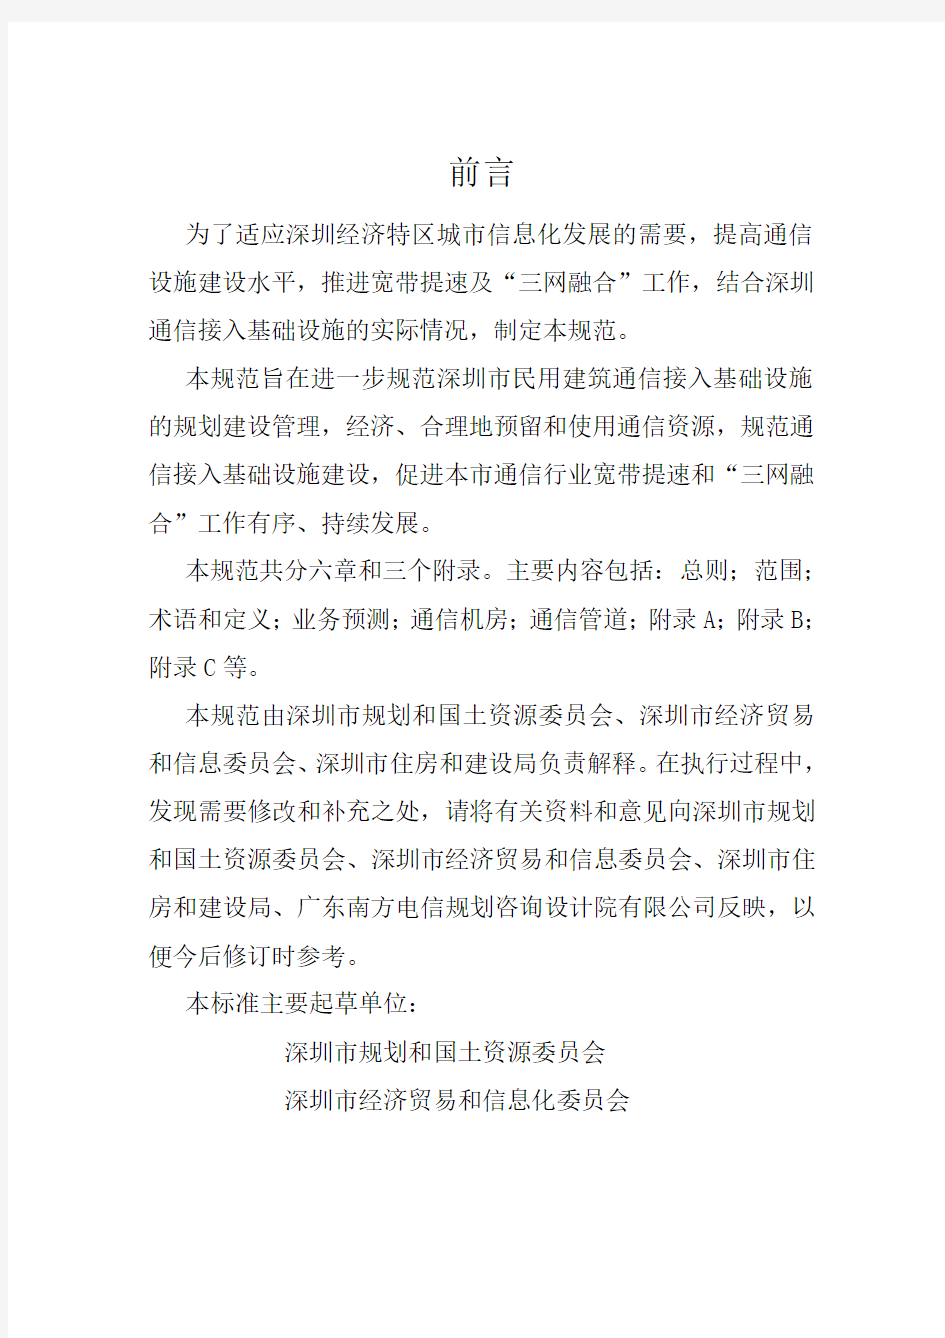 深圳市通信接入基础设施规划规范初稿(最终版)